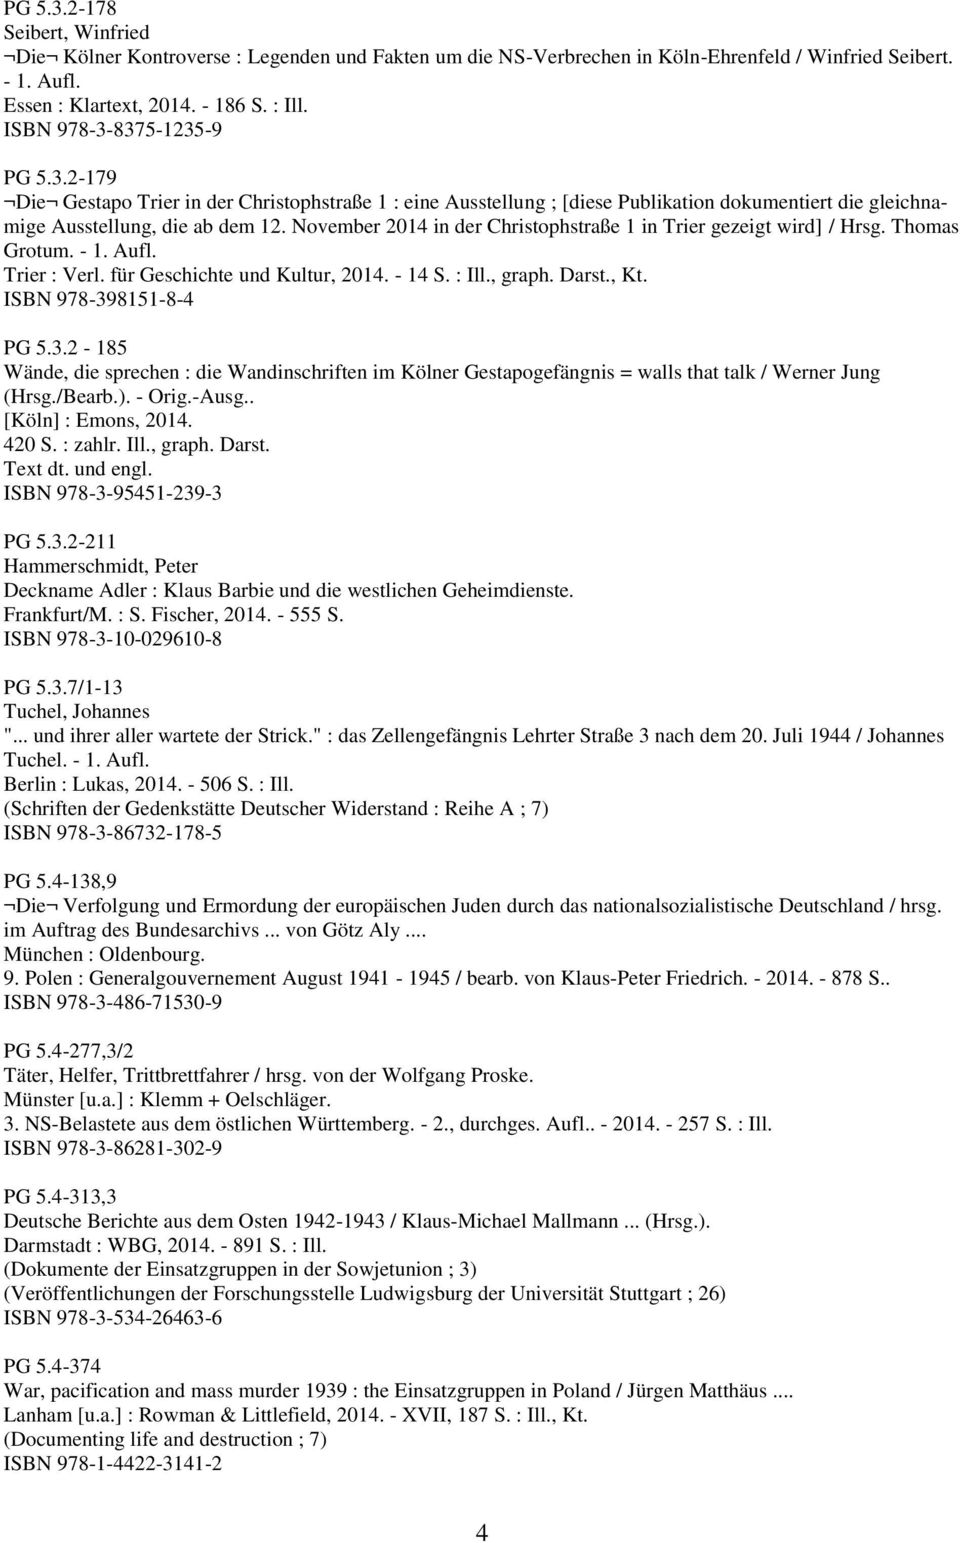 November 2014 in der Christophstraße 1 in Trier gezeigt wird] / Hrsg. Thomas Grotum. - 1. Aufl. Trier : Verl. für Geschichte und Kultur, 2014. - 14 S. : Ill., graph. Darst., Kt.